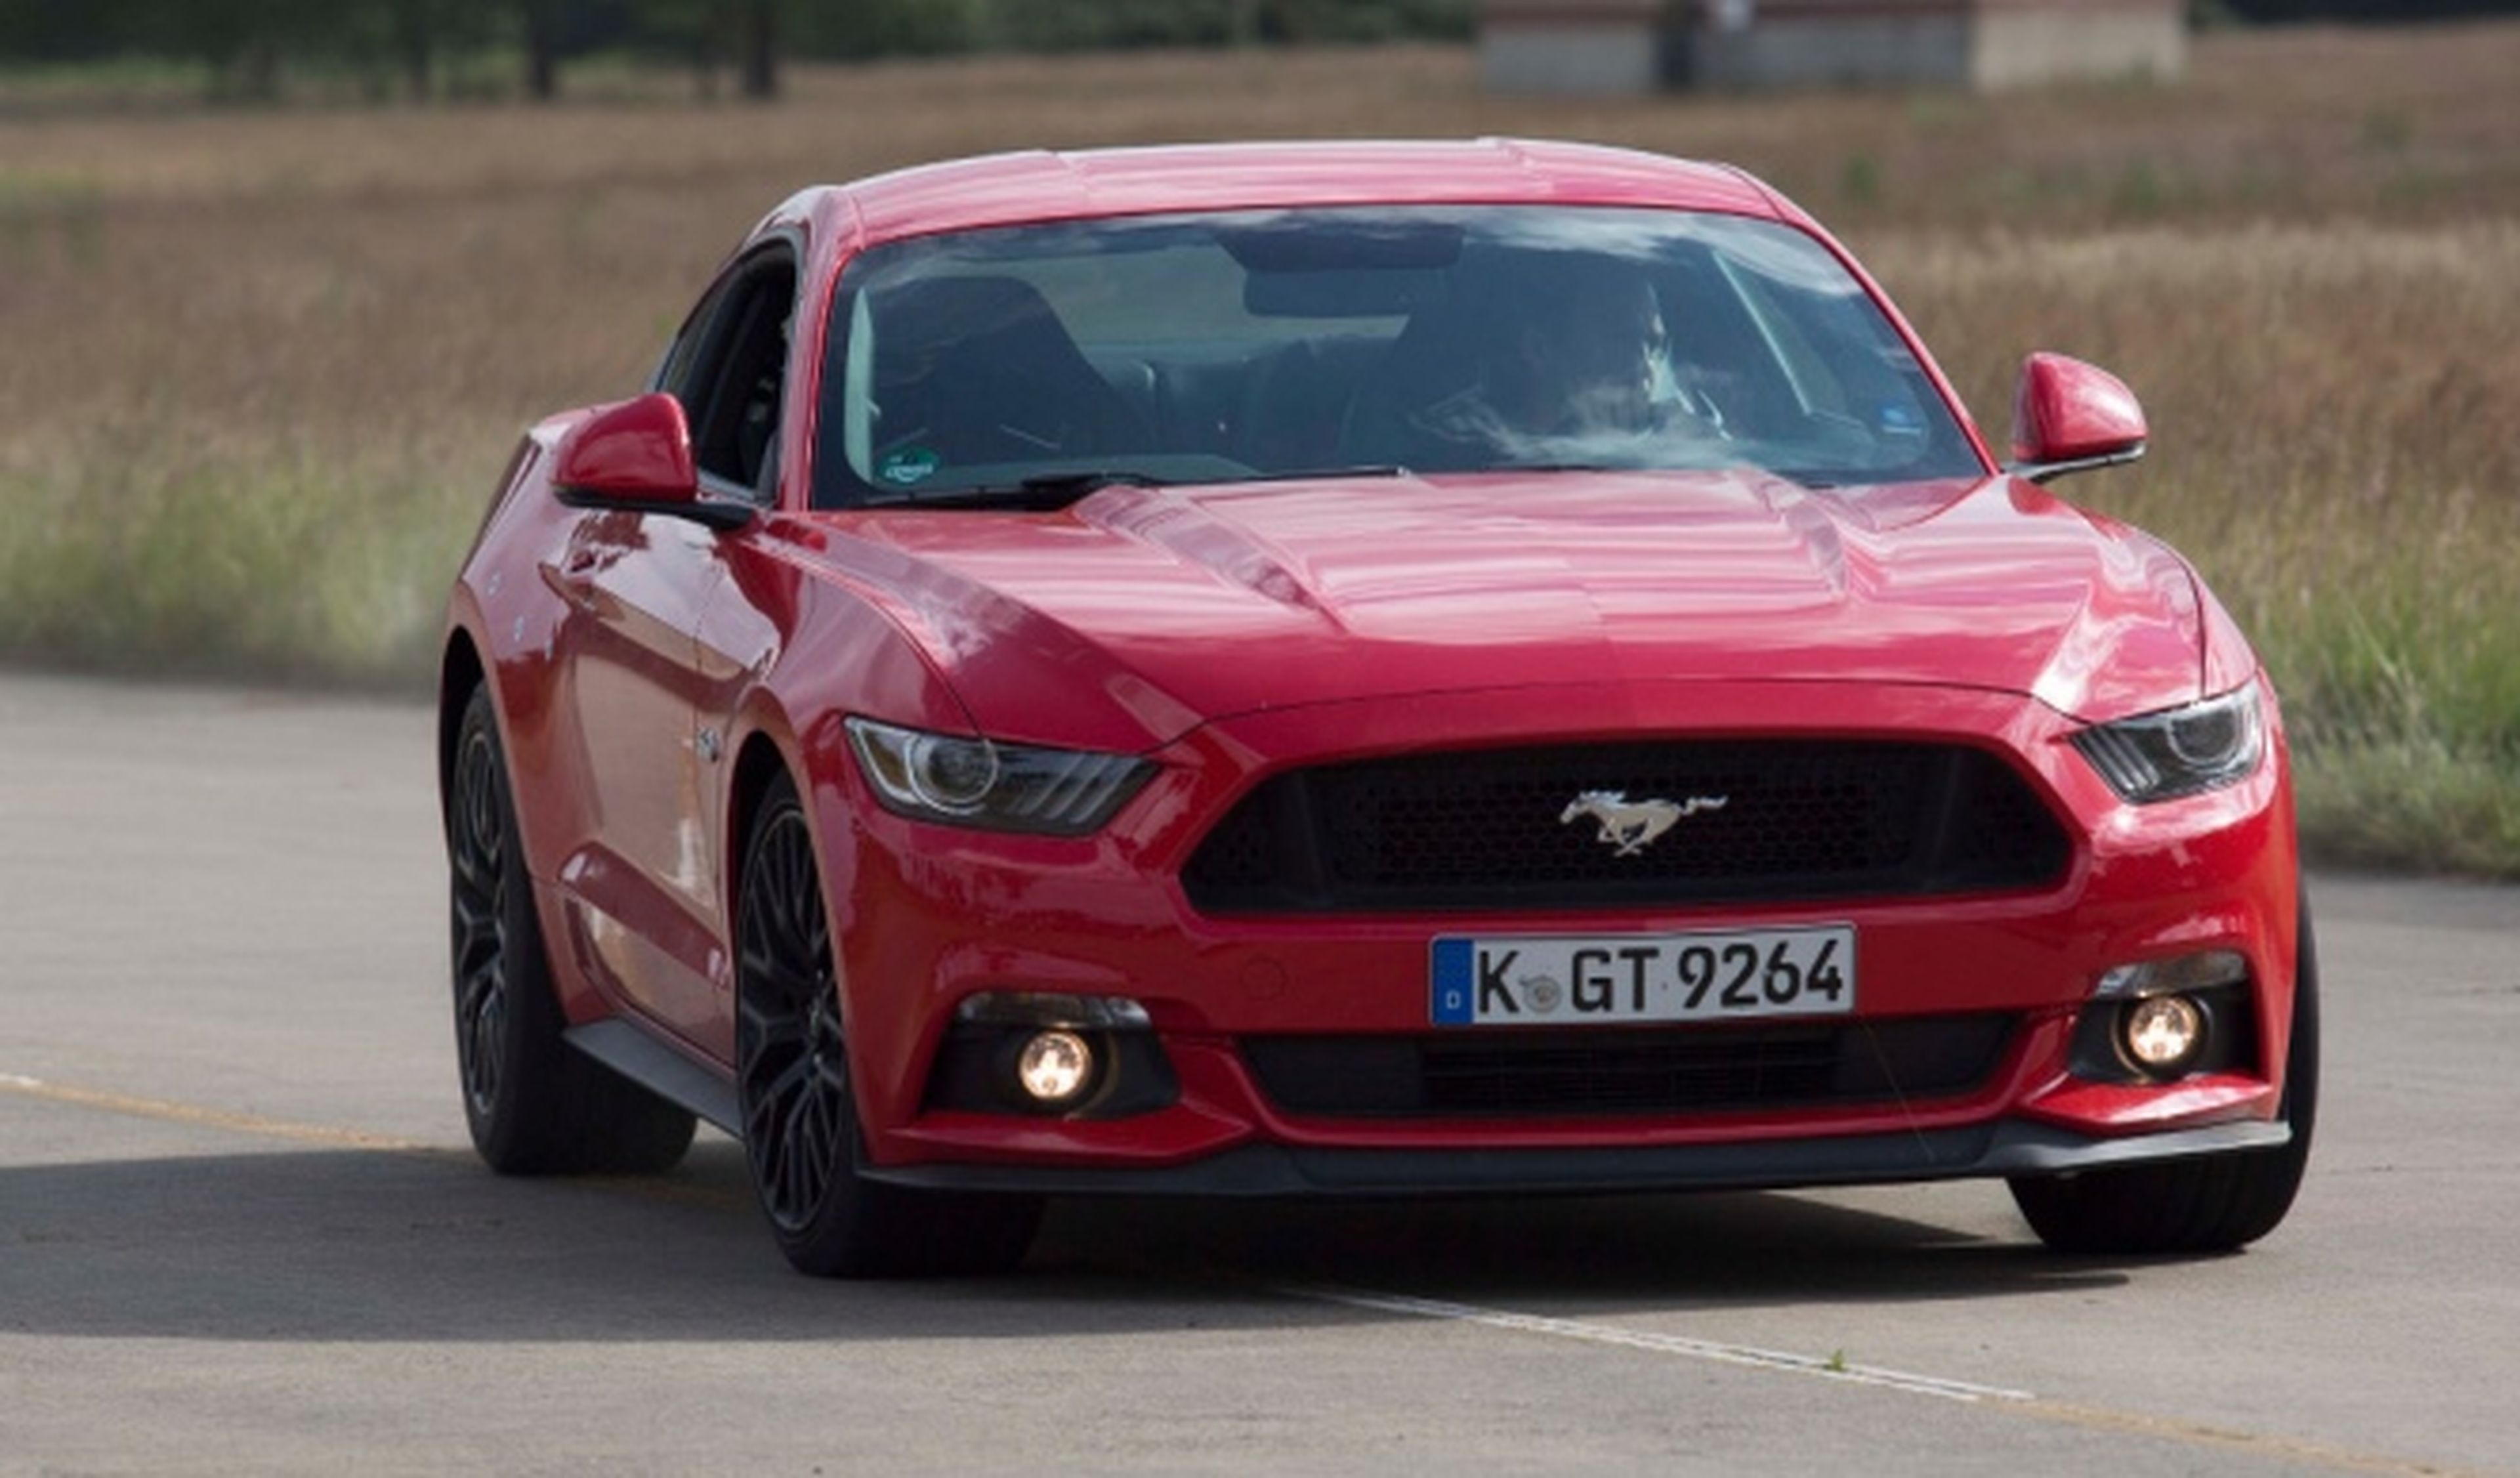 ¿Es el Ford Mustang el coche más espectacular?